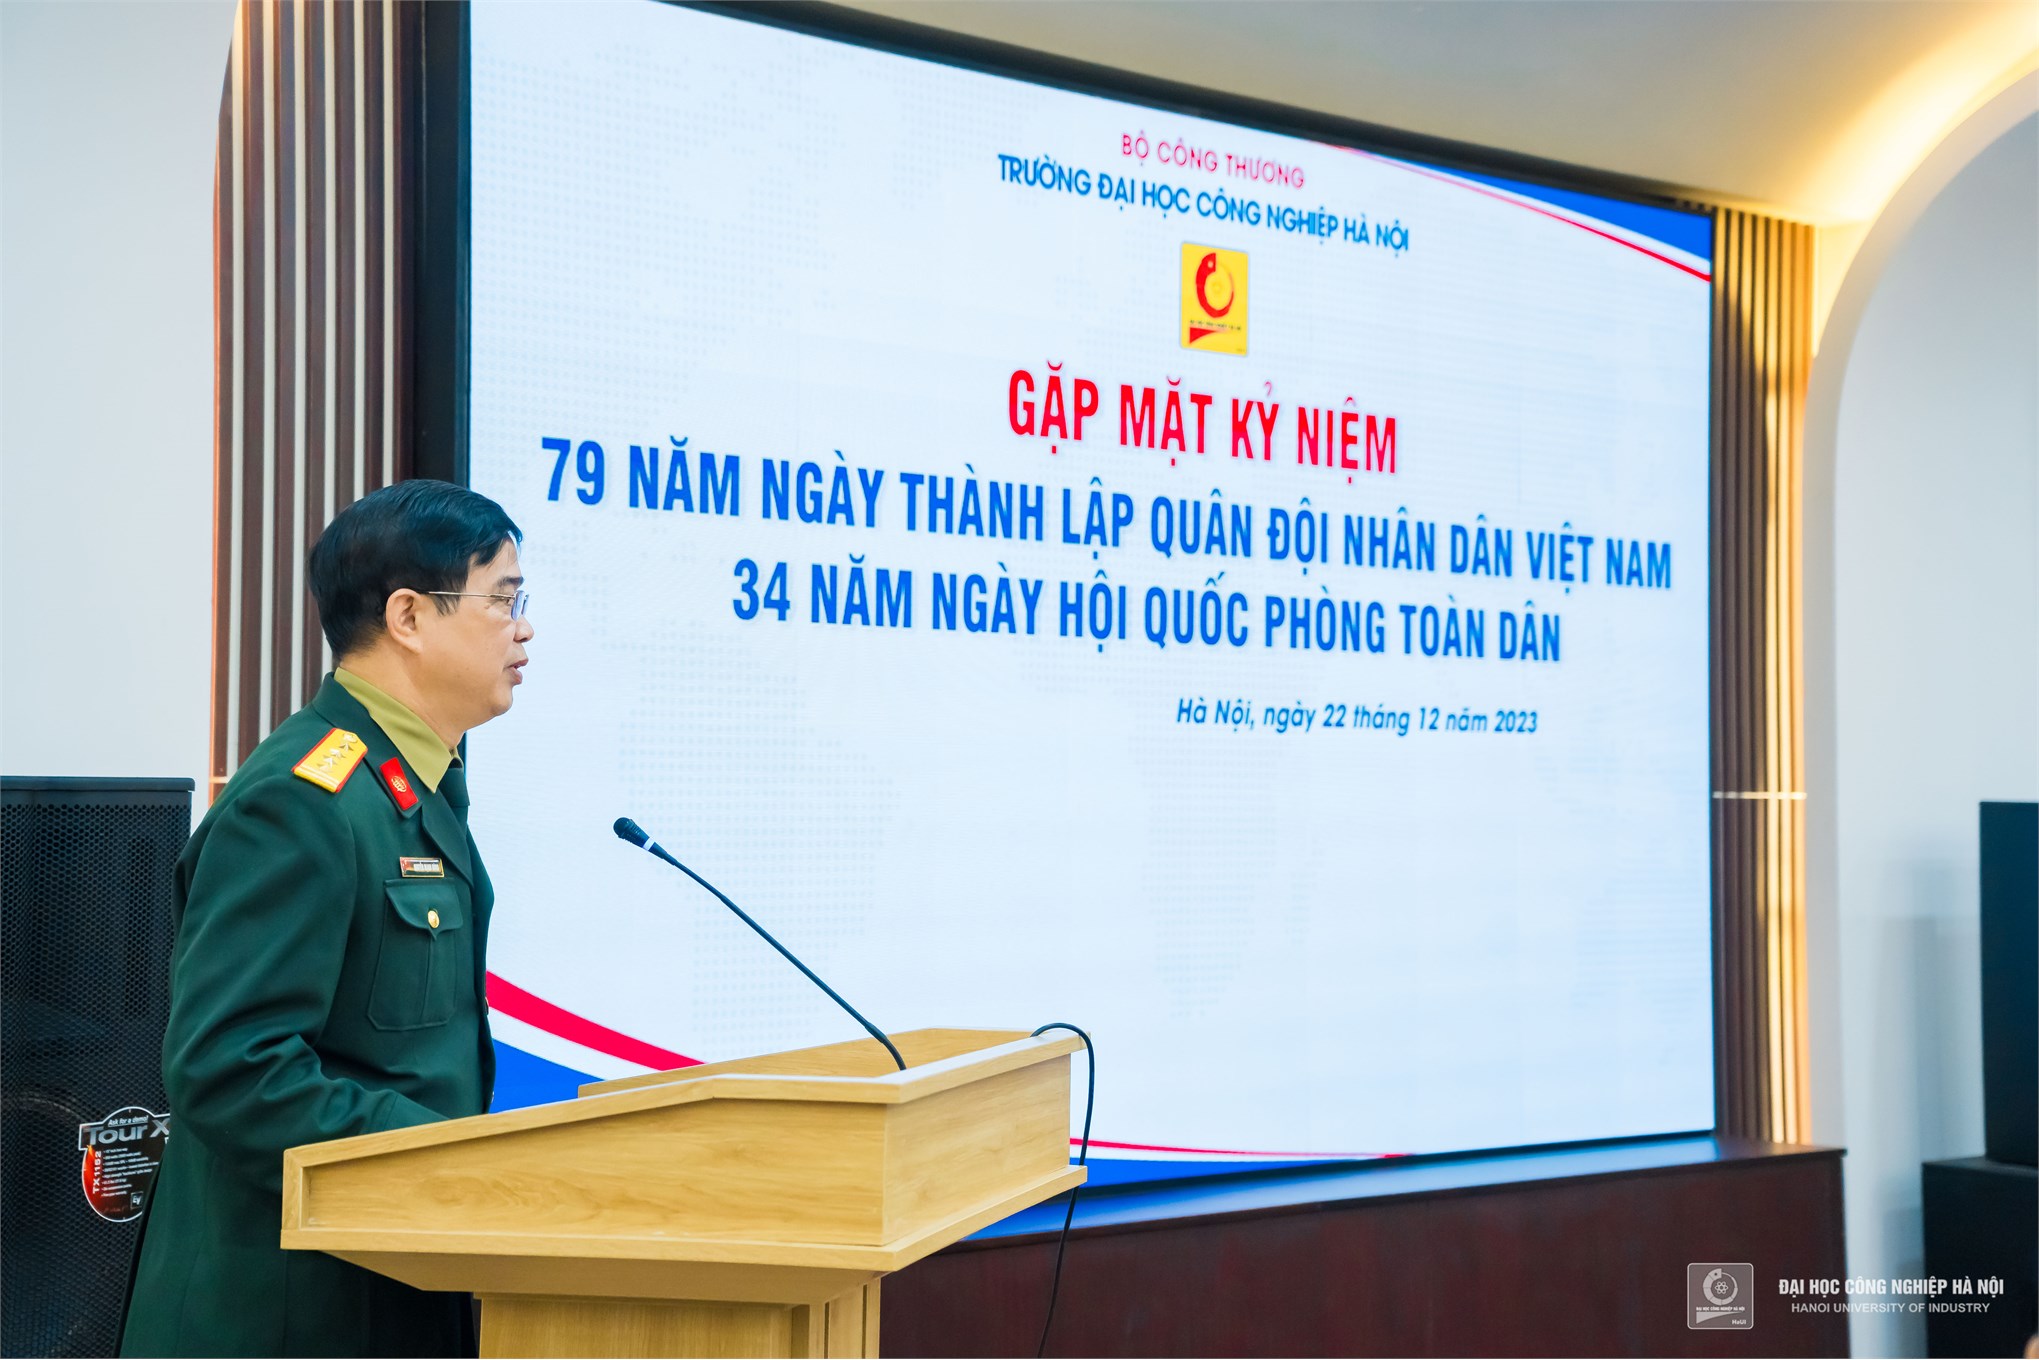 Gặp mặt cựu chiến binh, cựu quân nhân Trường Đại học Công nghiệp Hà Nội